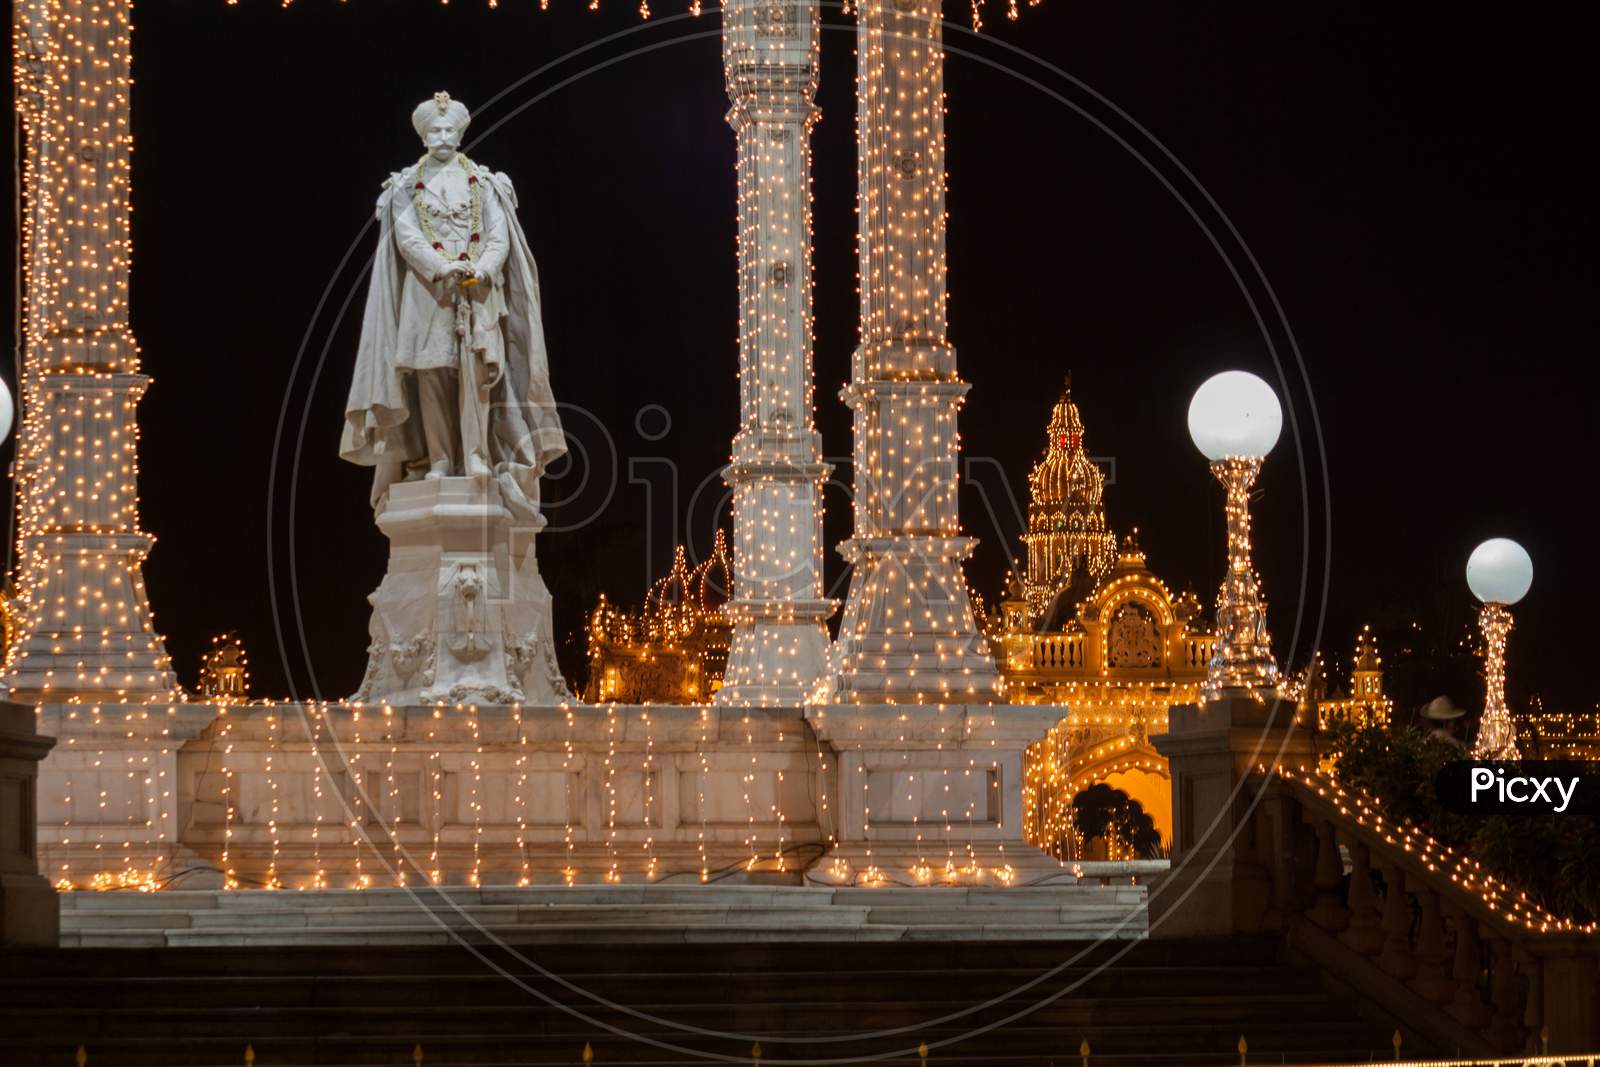 Maharajah Circle with Palace lighting